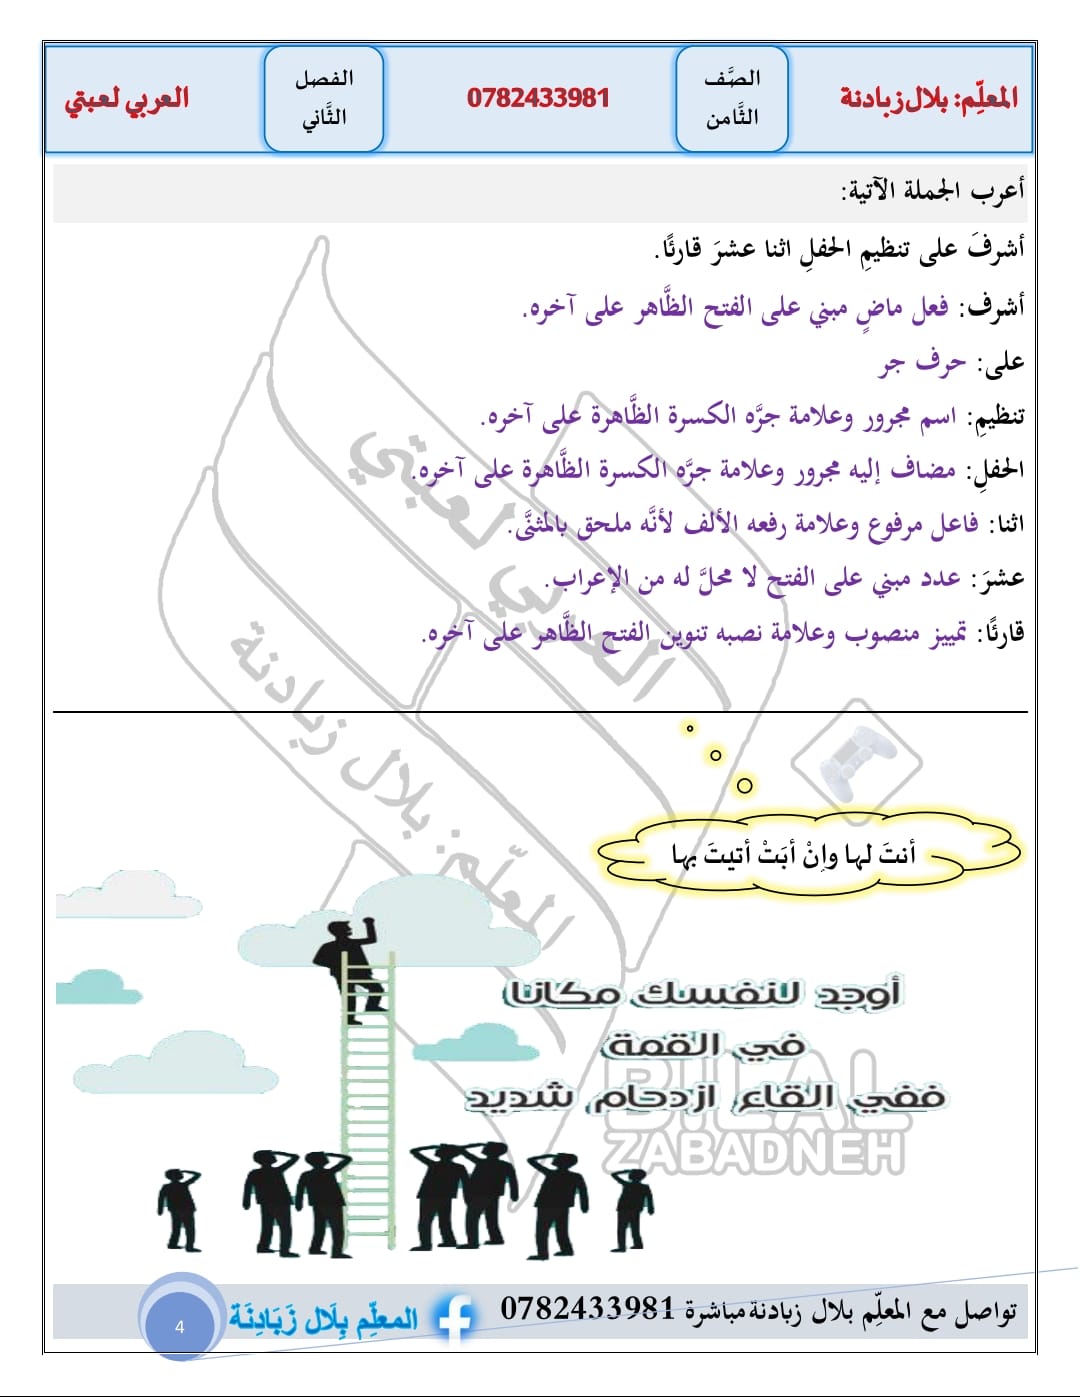 MTc5ODMwMC4zMTk4 بالصور شرح وحدة الاعداد المركبة مادة اللغ العربية للصف الثامن الفصل الثاني 2024